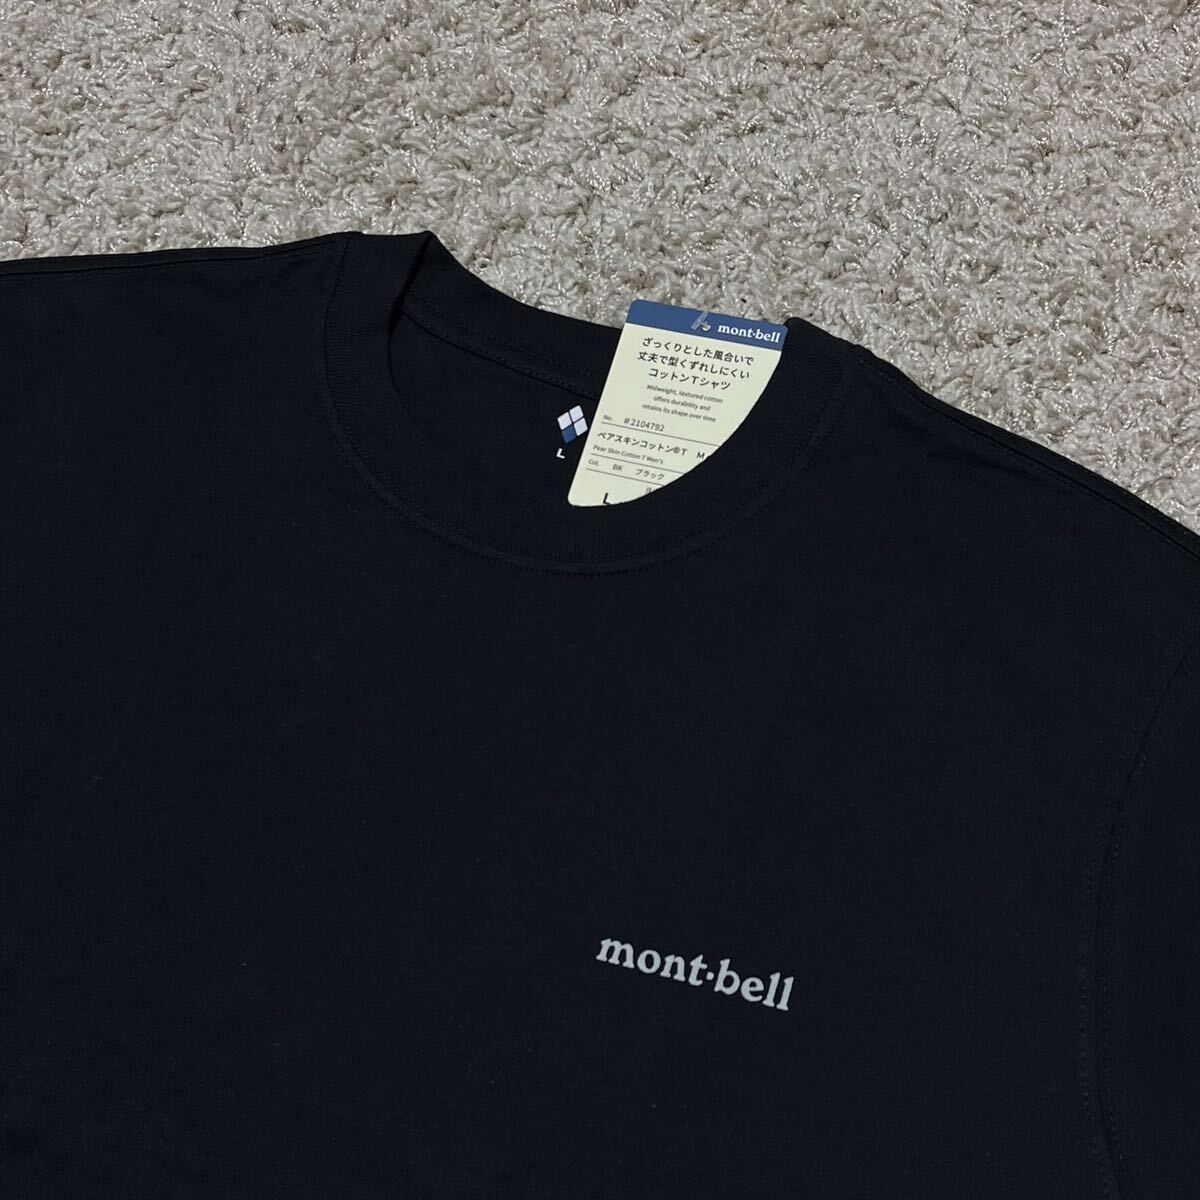 新品 montbell モンベル ペアスキンコットン Tシャツ Lサイズ ブラック 男女兼用 メンズ レディース キャンプ アウトドア 8746